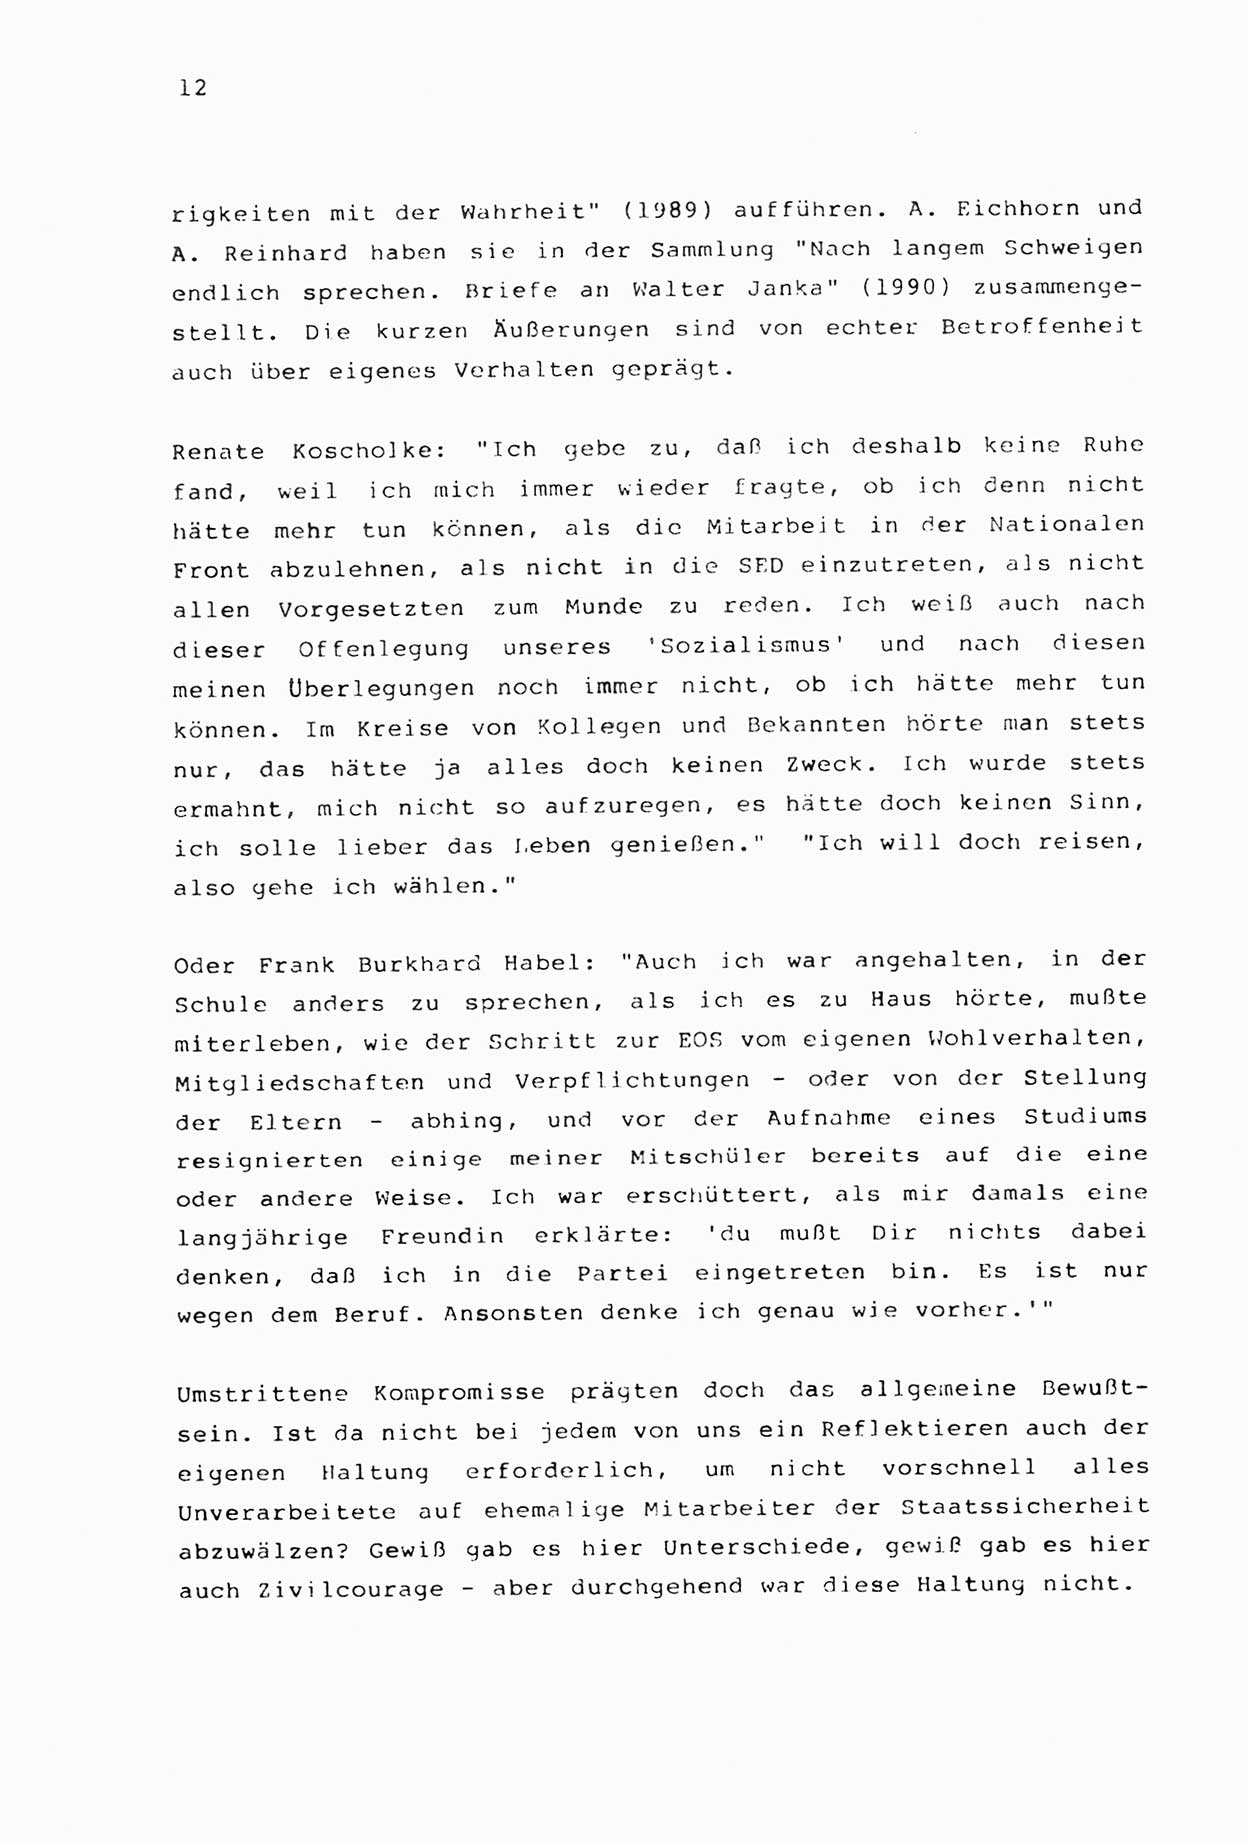 Zwie-Gespräch, Beiträge zur Aufarbeitung der Stasi-Vergangenheit [Deutsche Demokratische Republik (DDR)], Ausgabe Nr. 2, Berlin 1991, Seite 12 (Zwie-Gespr. Ausg. 2 1991, S. 12)